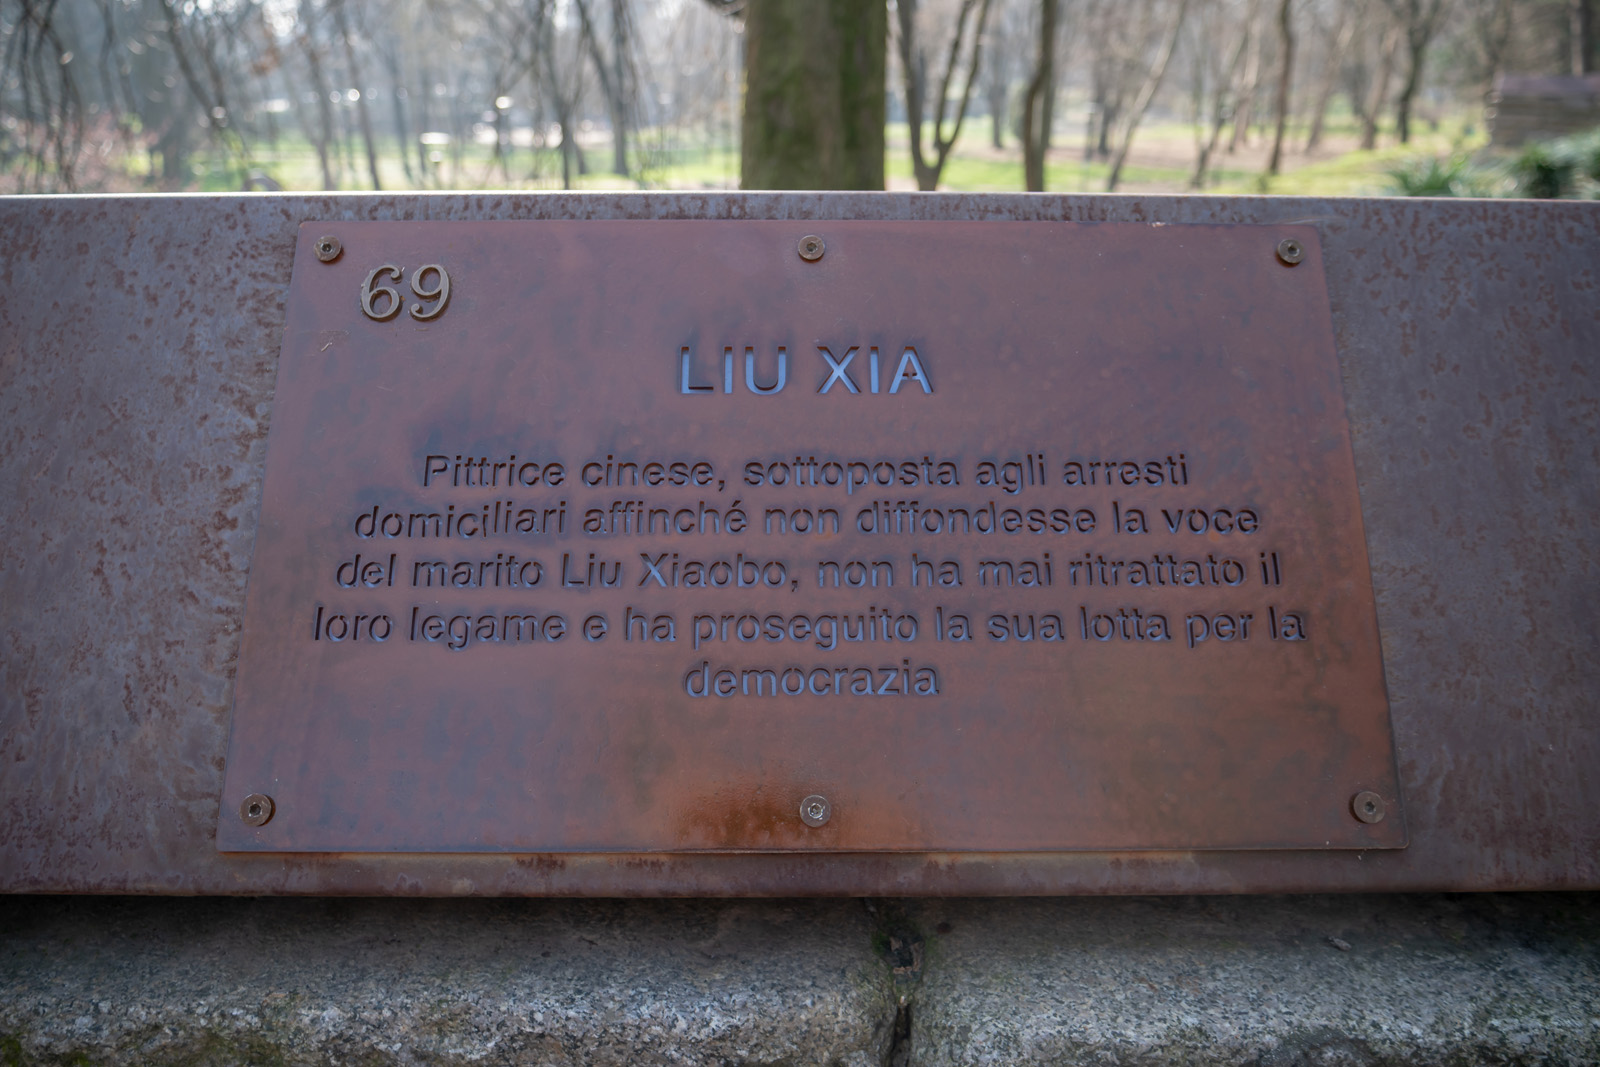 The plaque for Liu Xia